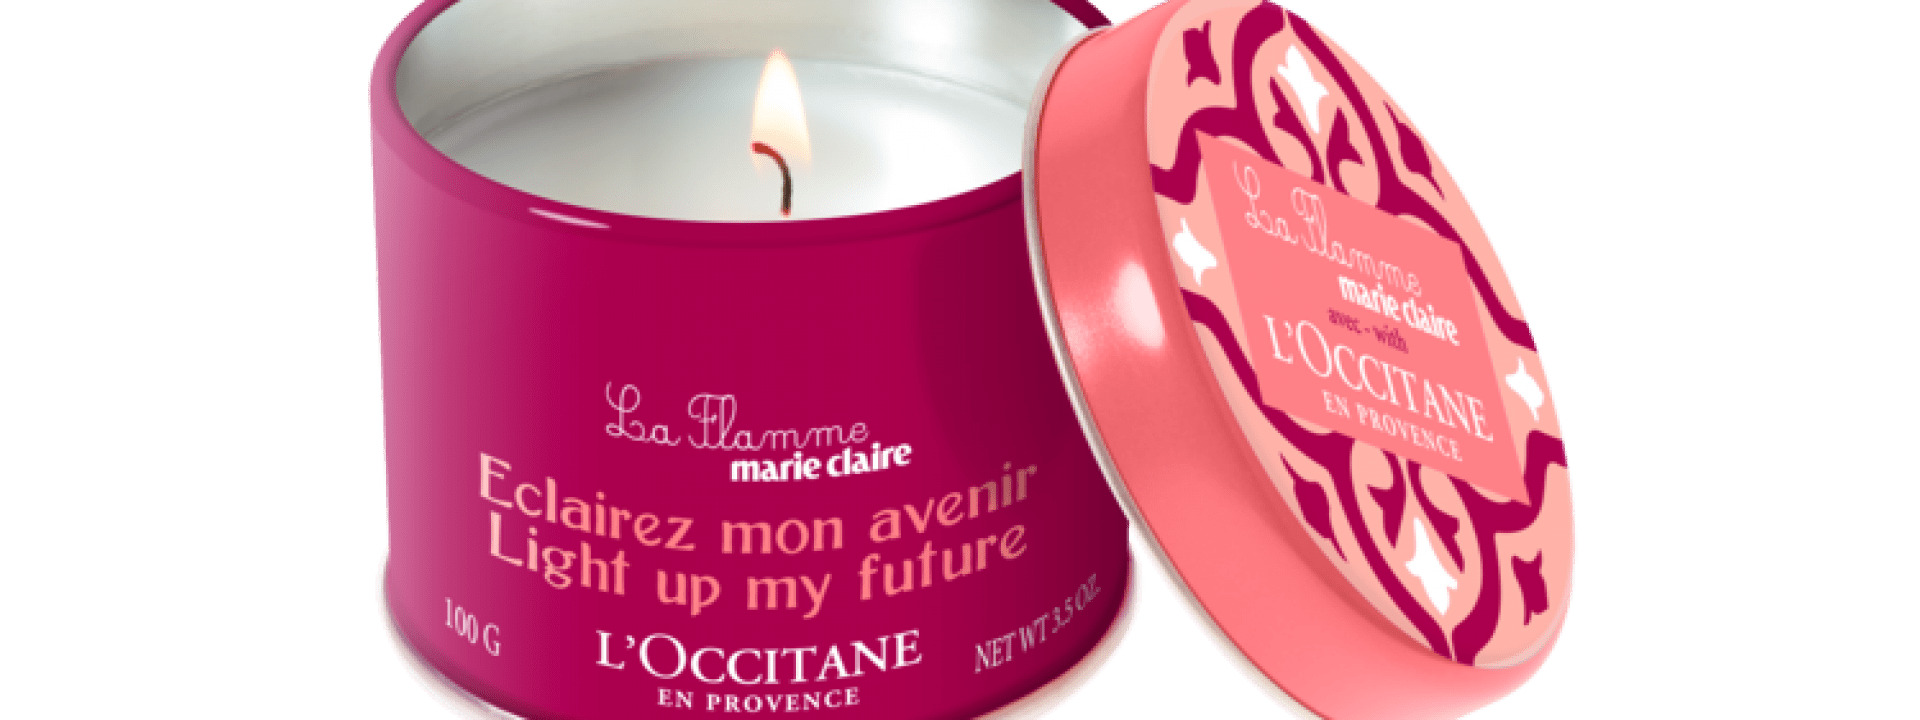 Apoie o empreendedorismo feminino com a L'occitane